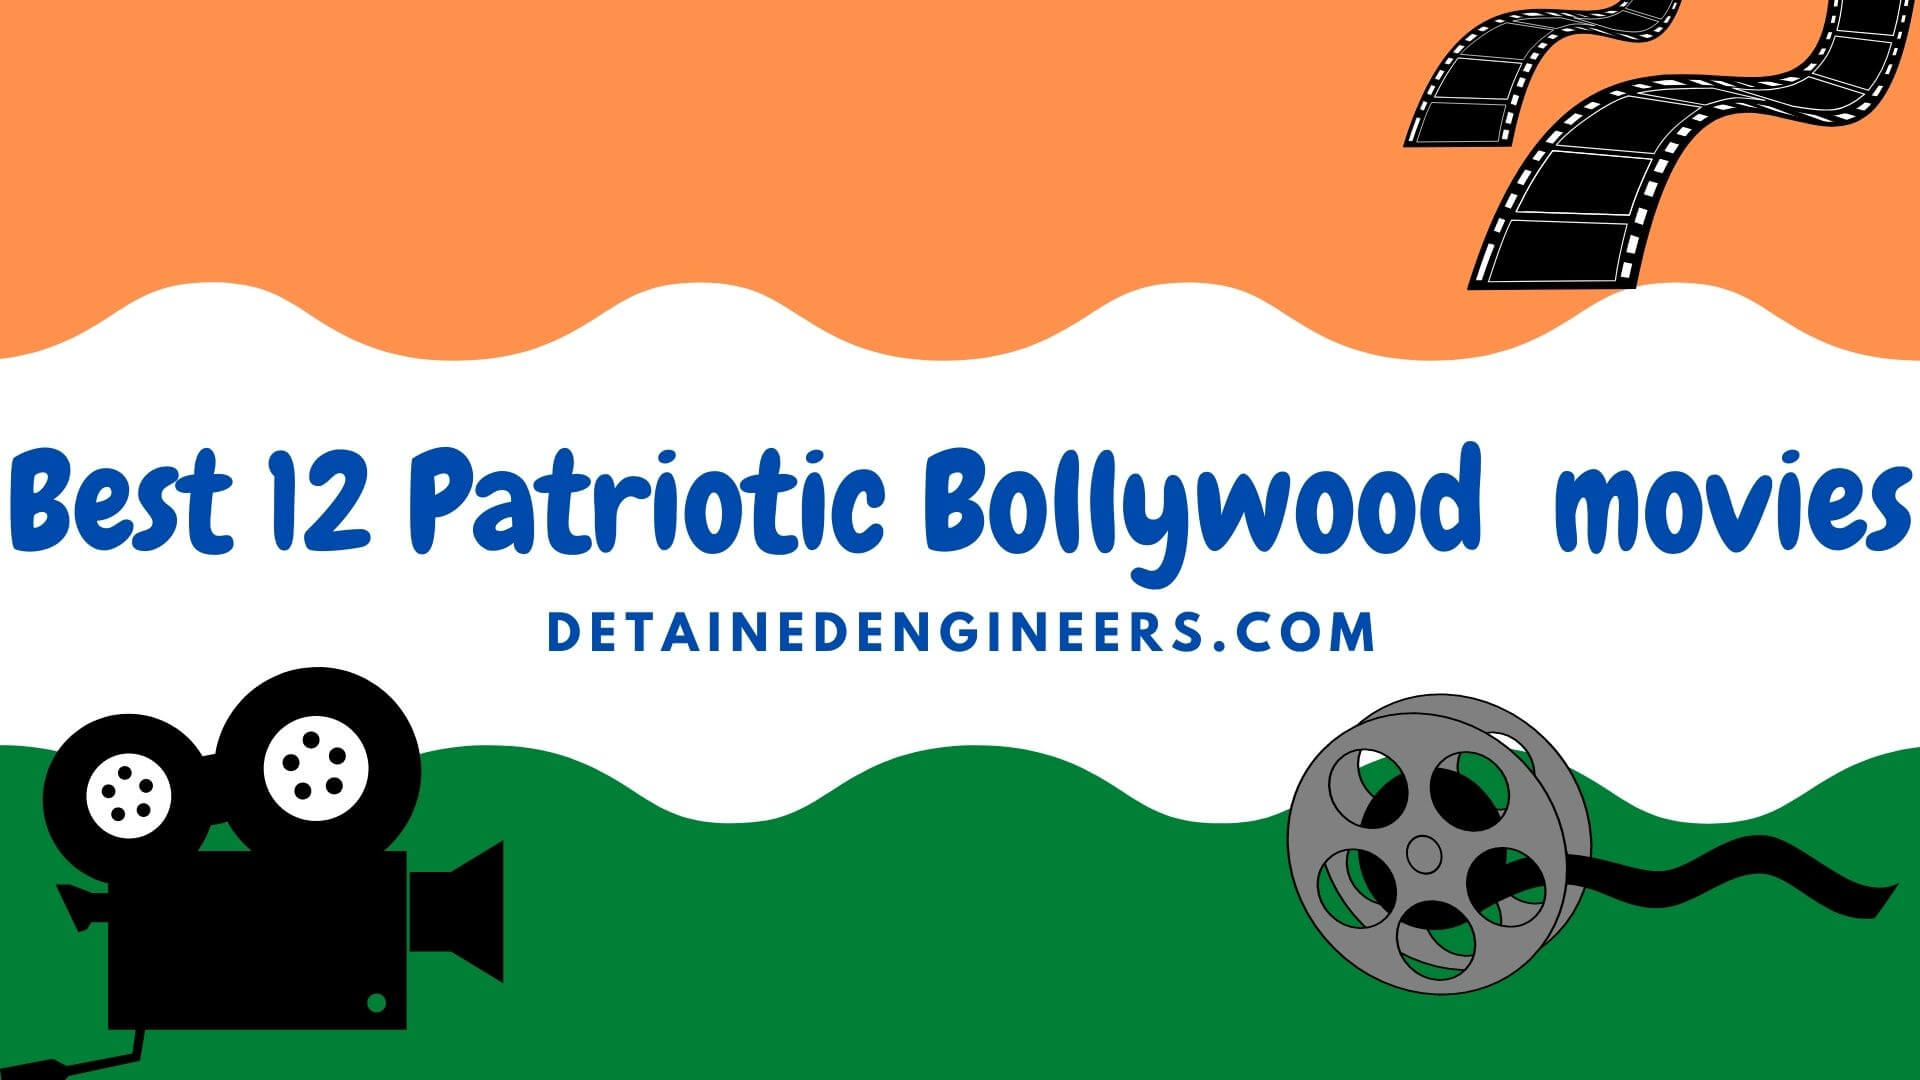 Best 12 Patriotic Bollywood movies